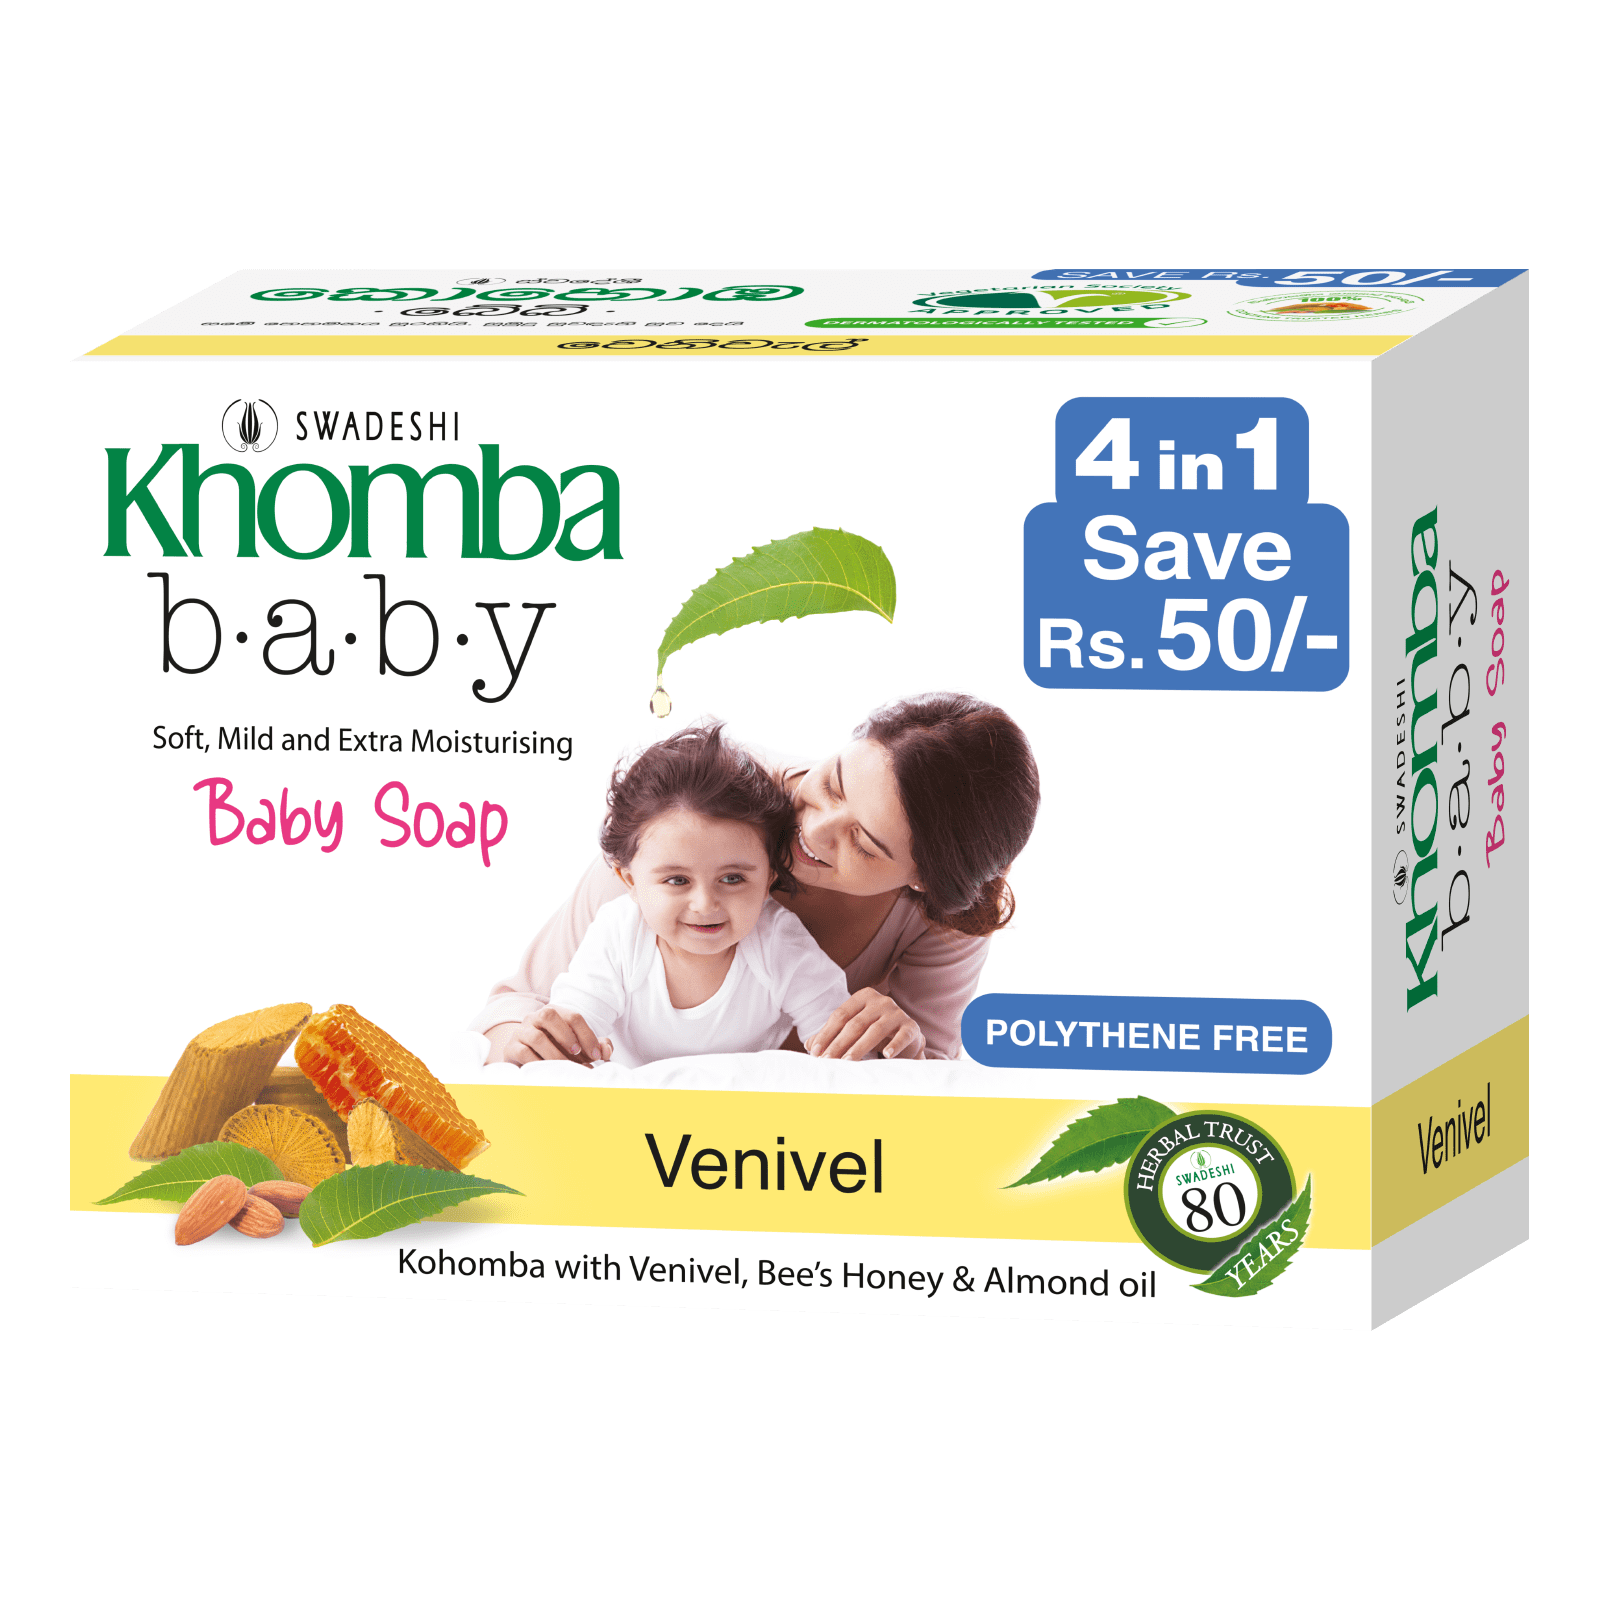 Khomba Baby Soap 4 in 1 Venivel